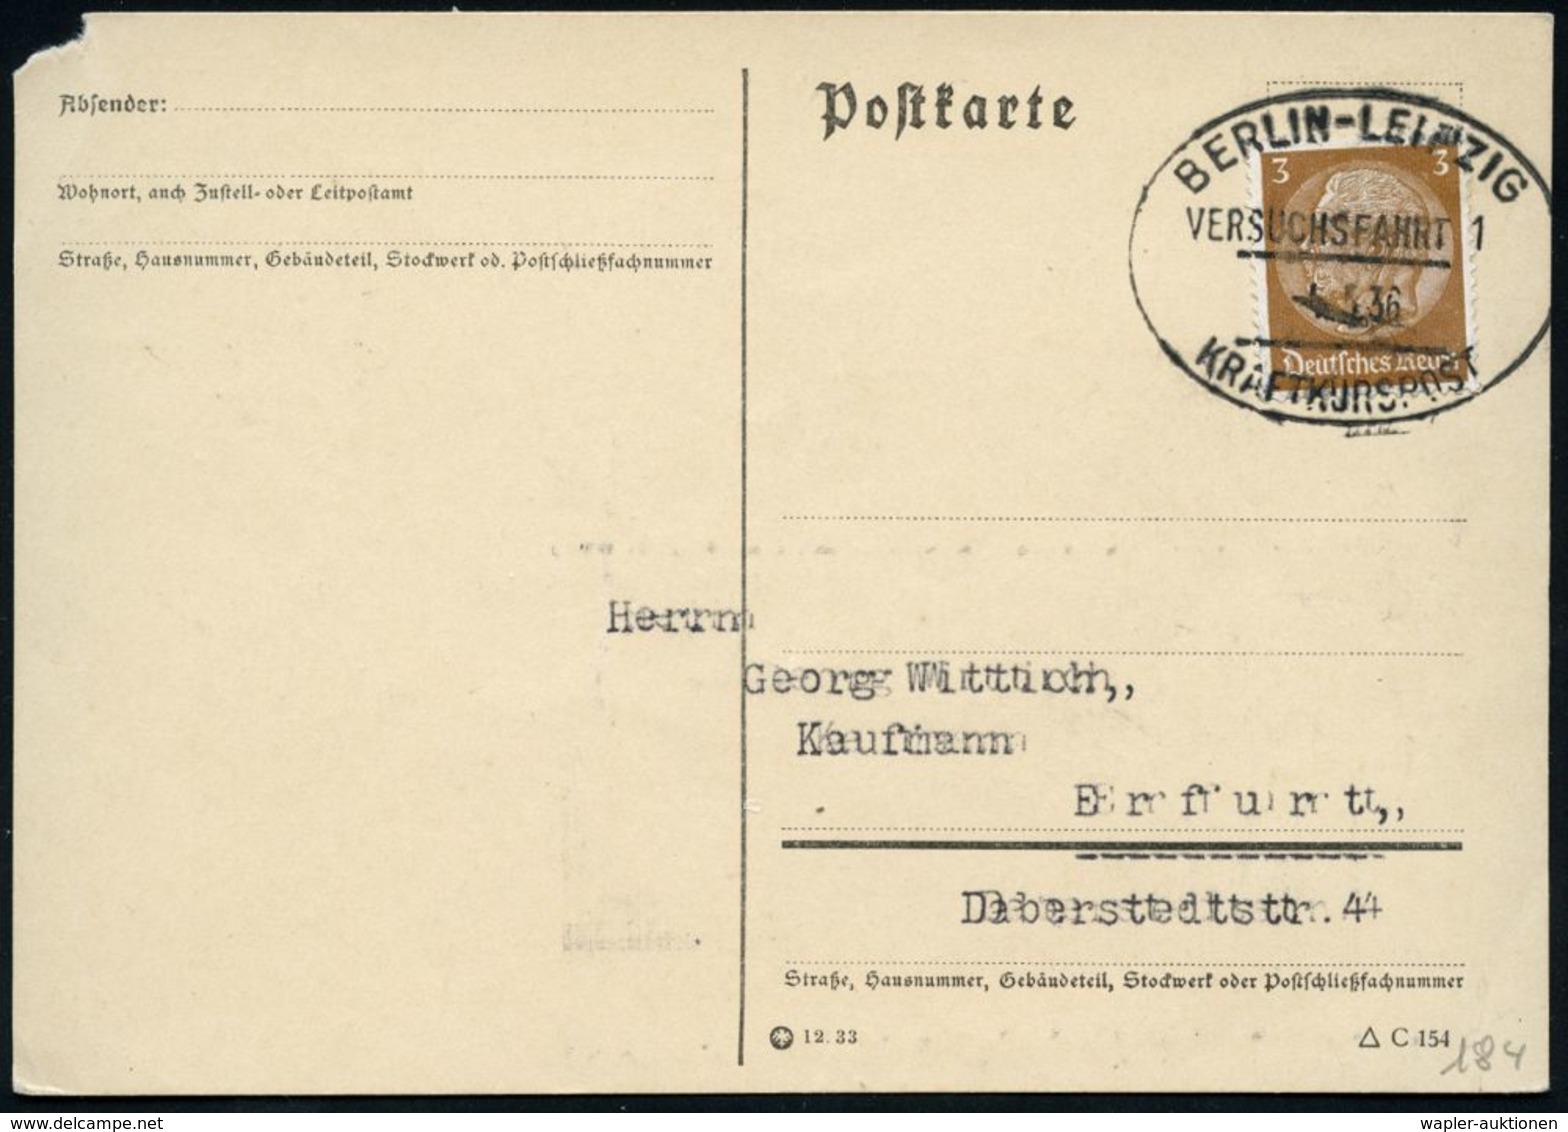 BERLIN-LEIPZIG/ VERSUCHSFAHRT 1/ KRAFTKURSPOST 1936 (5.5.) Seltener Oval-St Von Der Eröffnungsfahrt! , Inl.-Karte + Kopi - Auto's